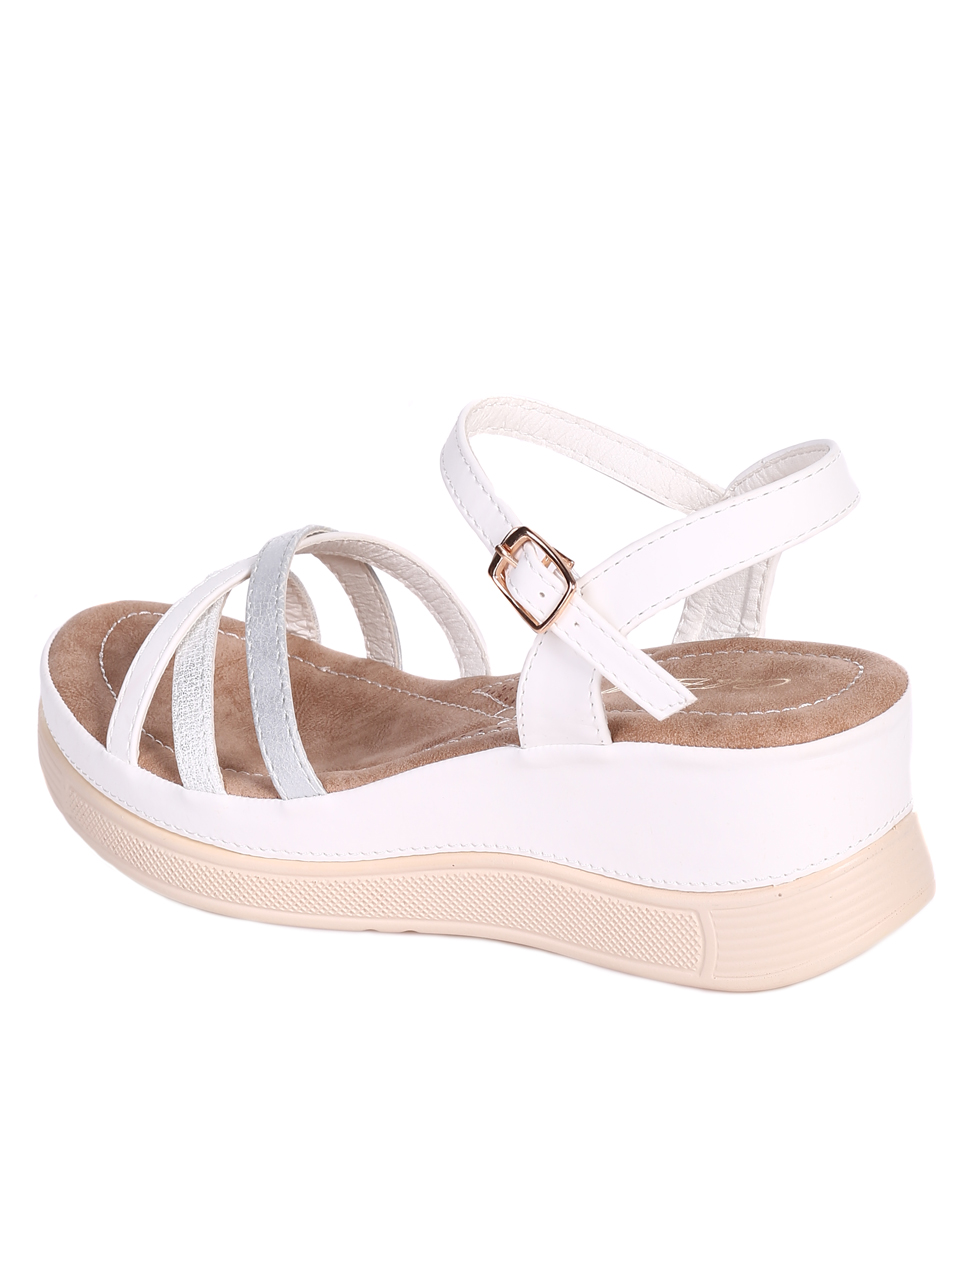 Ежедневни дамски сандали на платформа 4H-23114 white (22237)